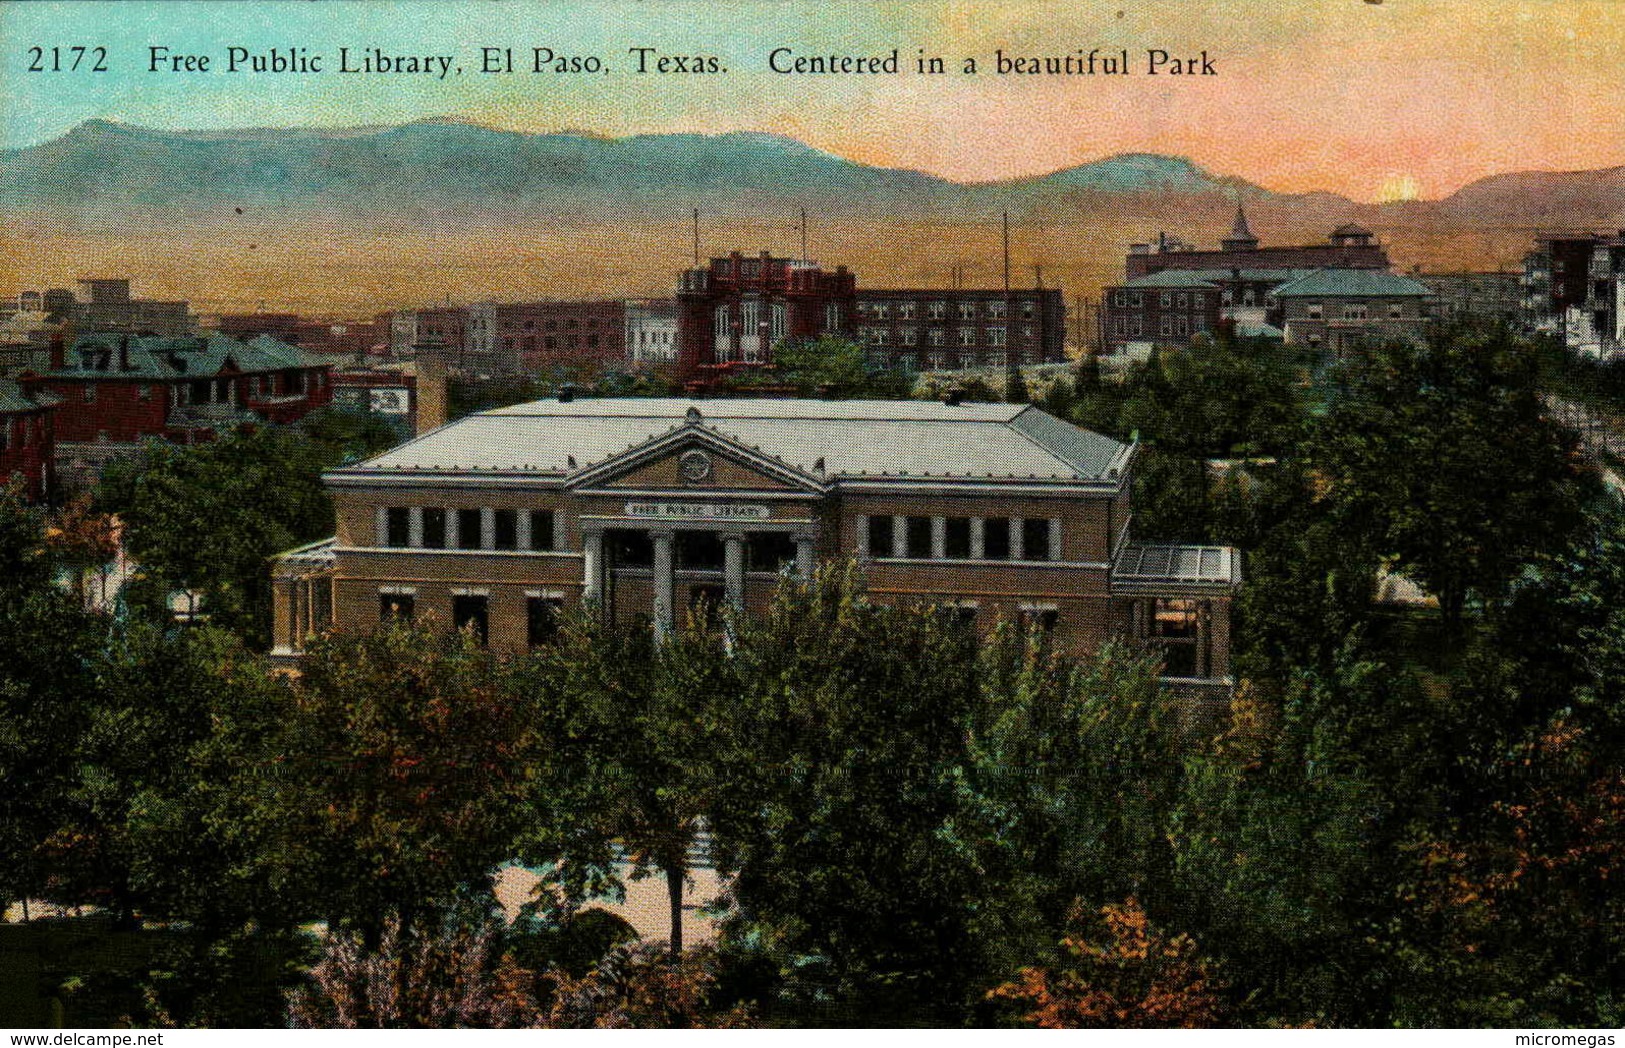 Free Public Library, El Paso, Texas - Centered In A Beautiful Park - El Paso